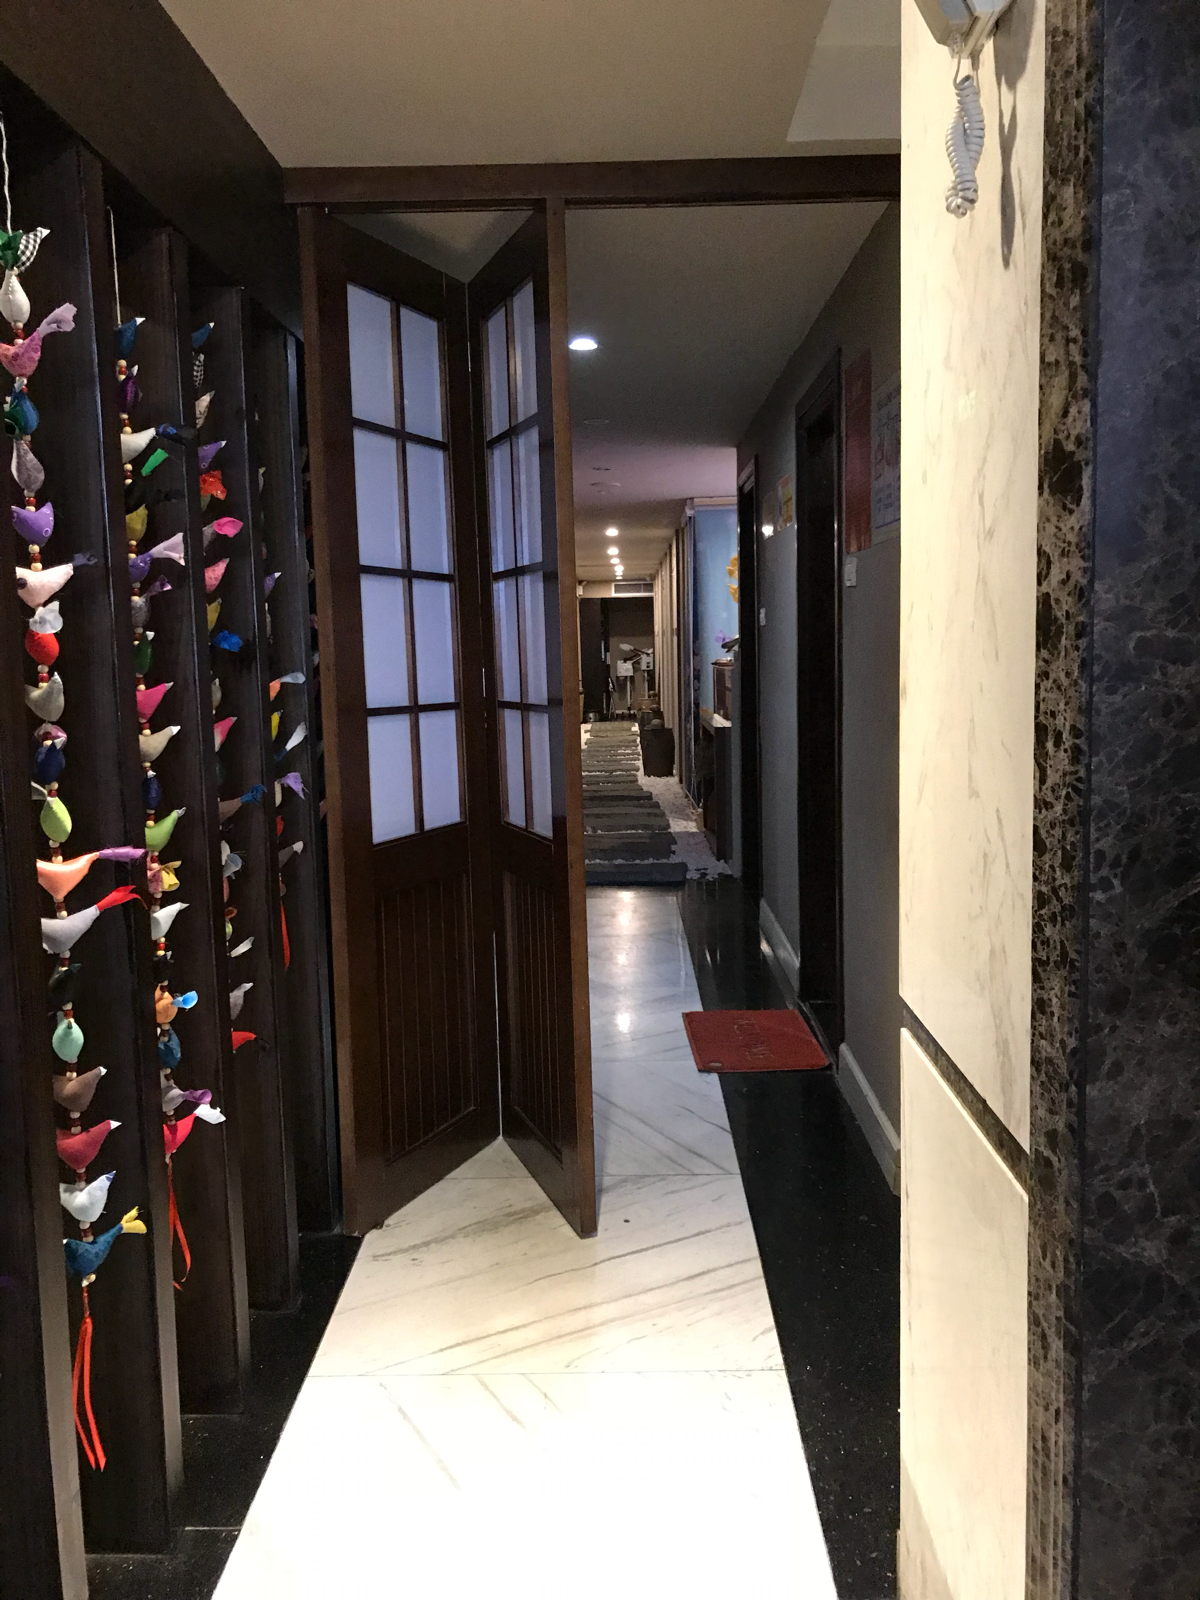 ハノイのホテルは間口が狭くて奥行きの深い「うなぎの寝床」になっていて面白い/ Hanoi Brilliant Hotel & Spa～子連れでハノイ旅行(6)